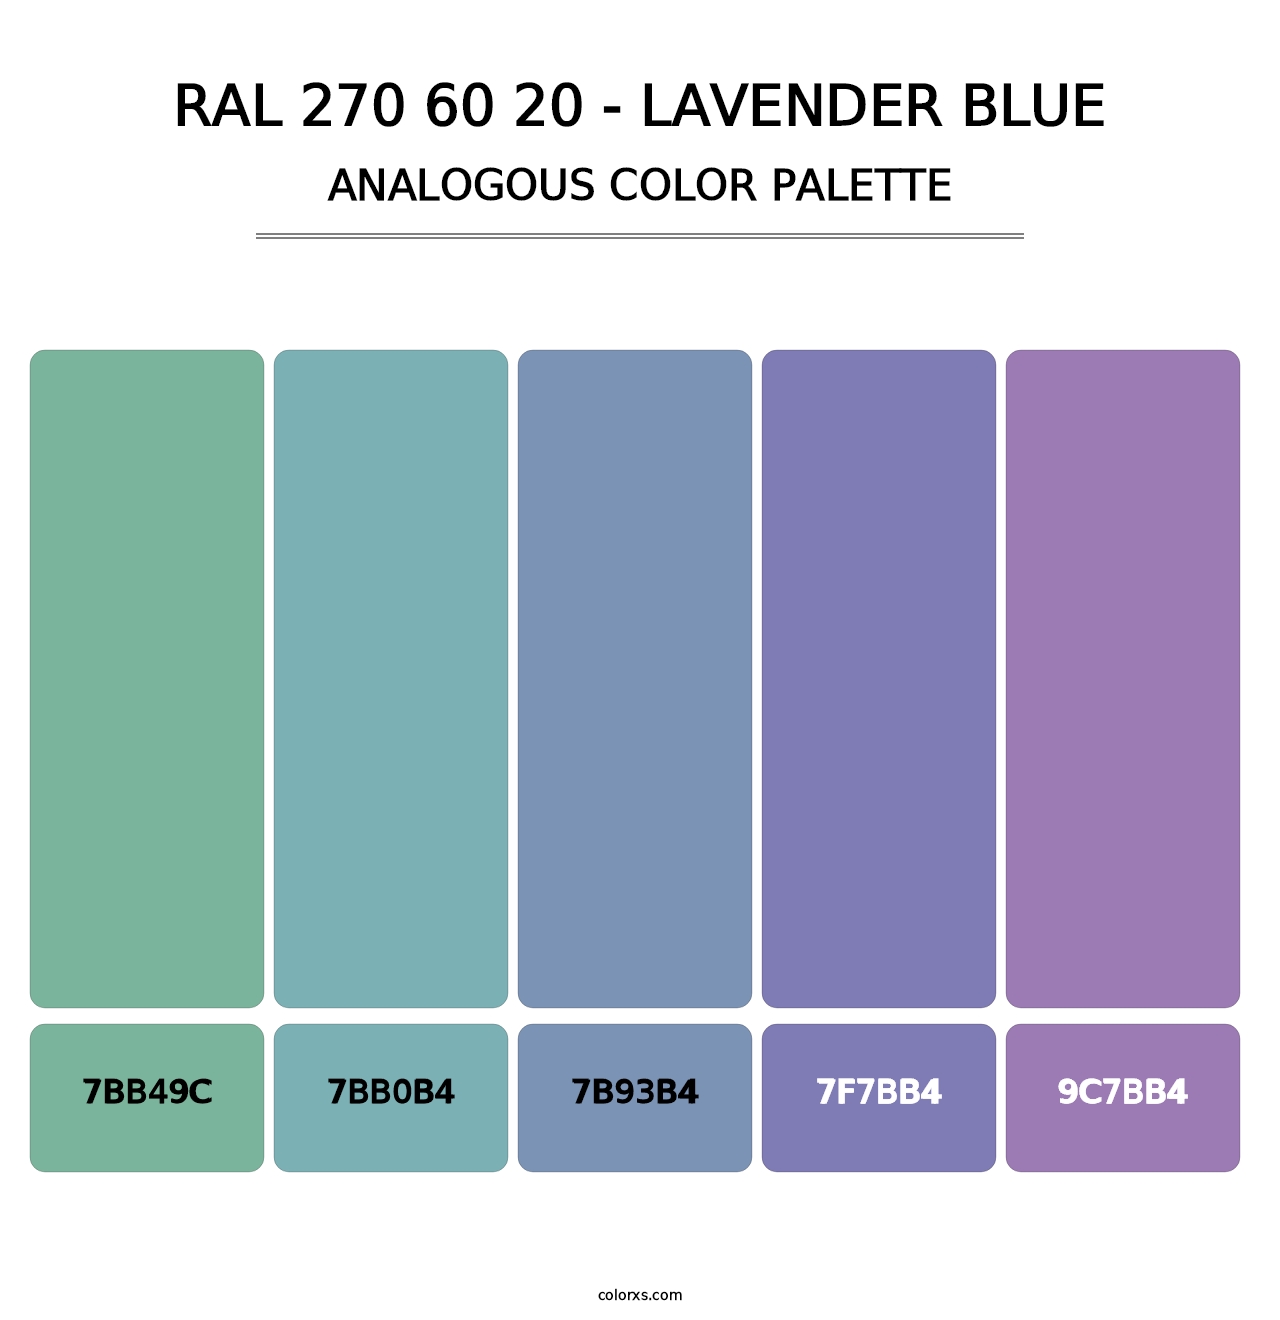 RAL 270 60 20 - Lavender Blue - Analogous Color Palette